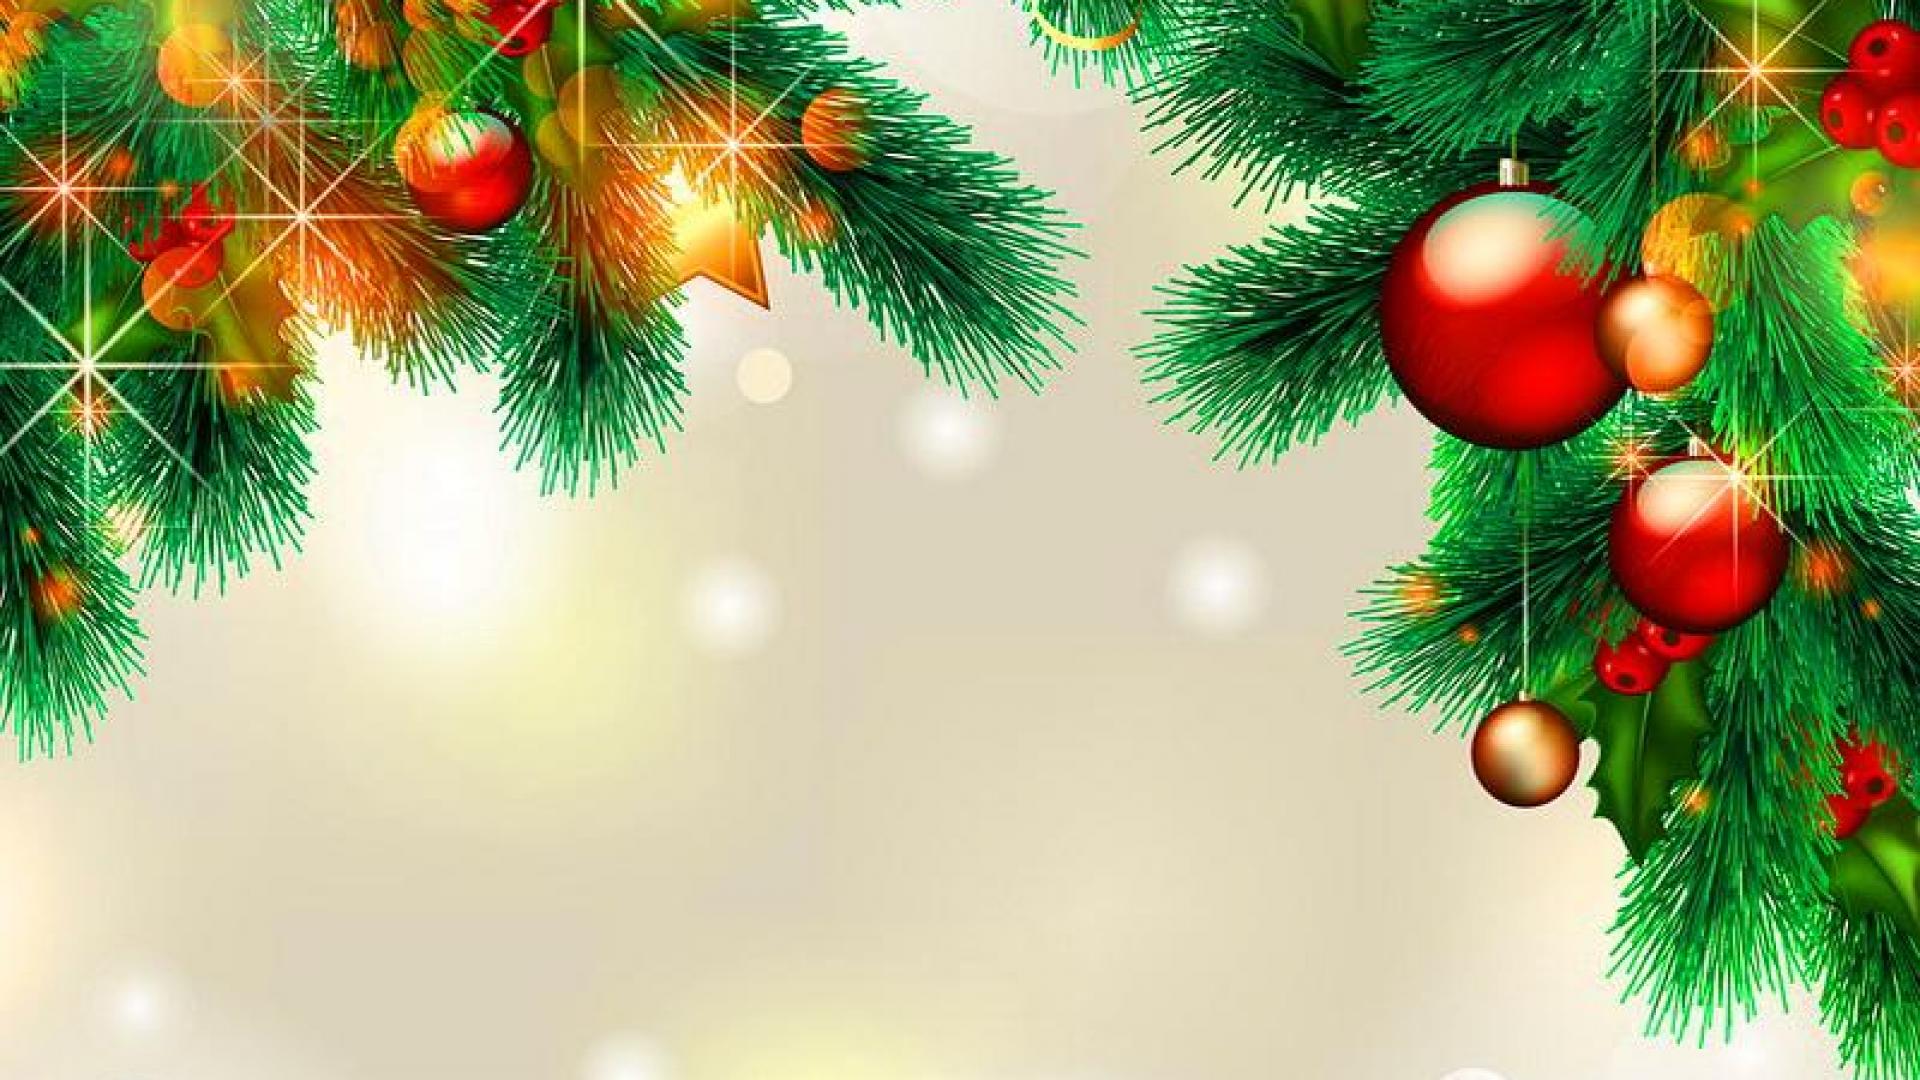 navidad fondos de pantalla hd,decoración navideña,árbol,árbol de navidad,decoración navideña,abeto